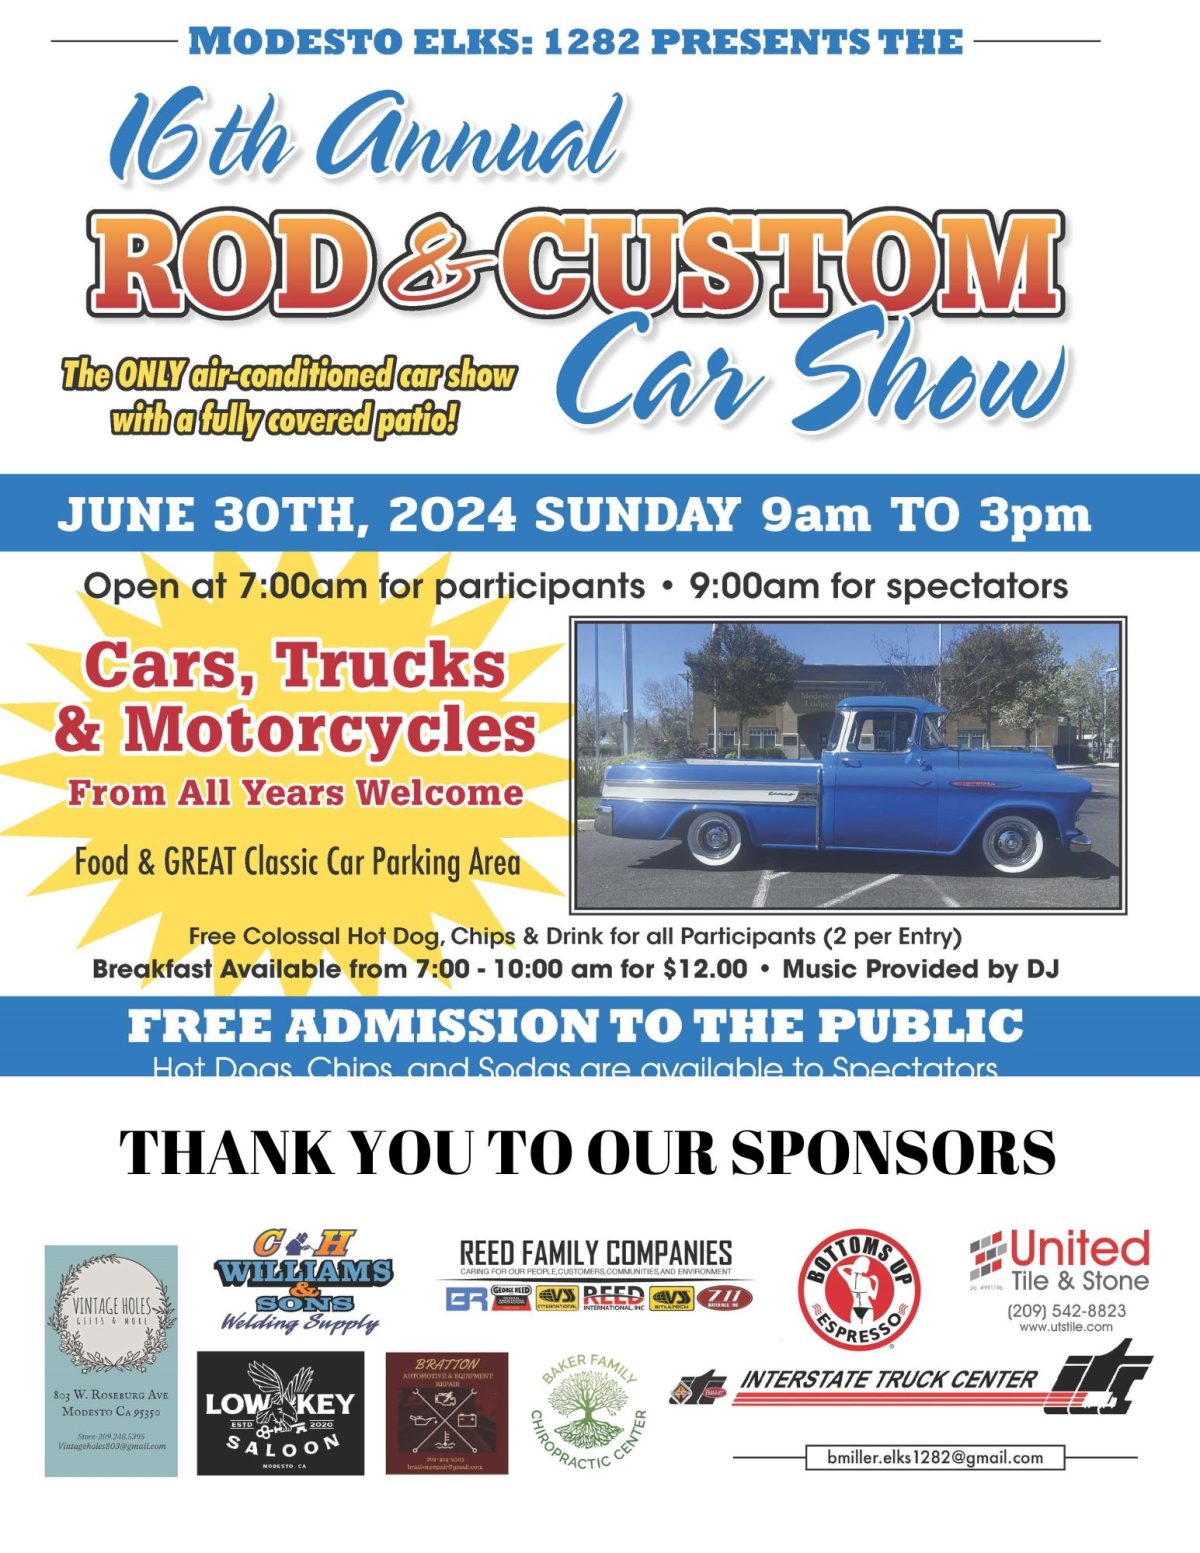 Rod and Custom Car Show